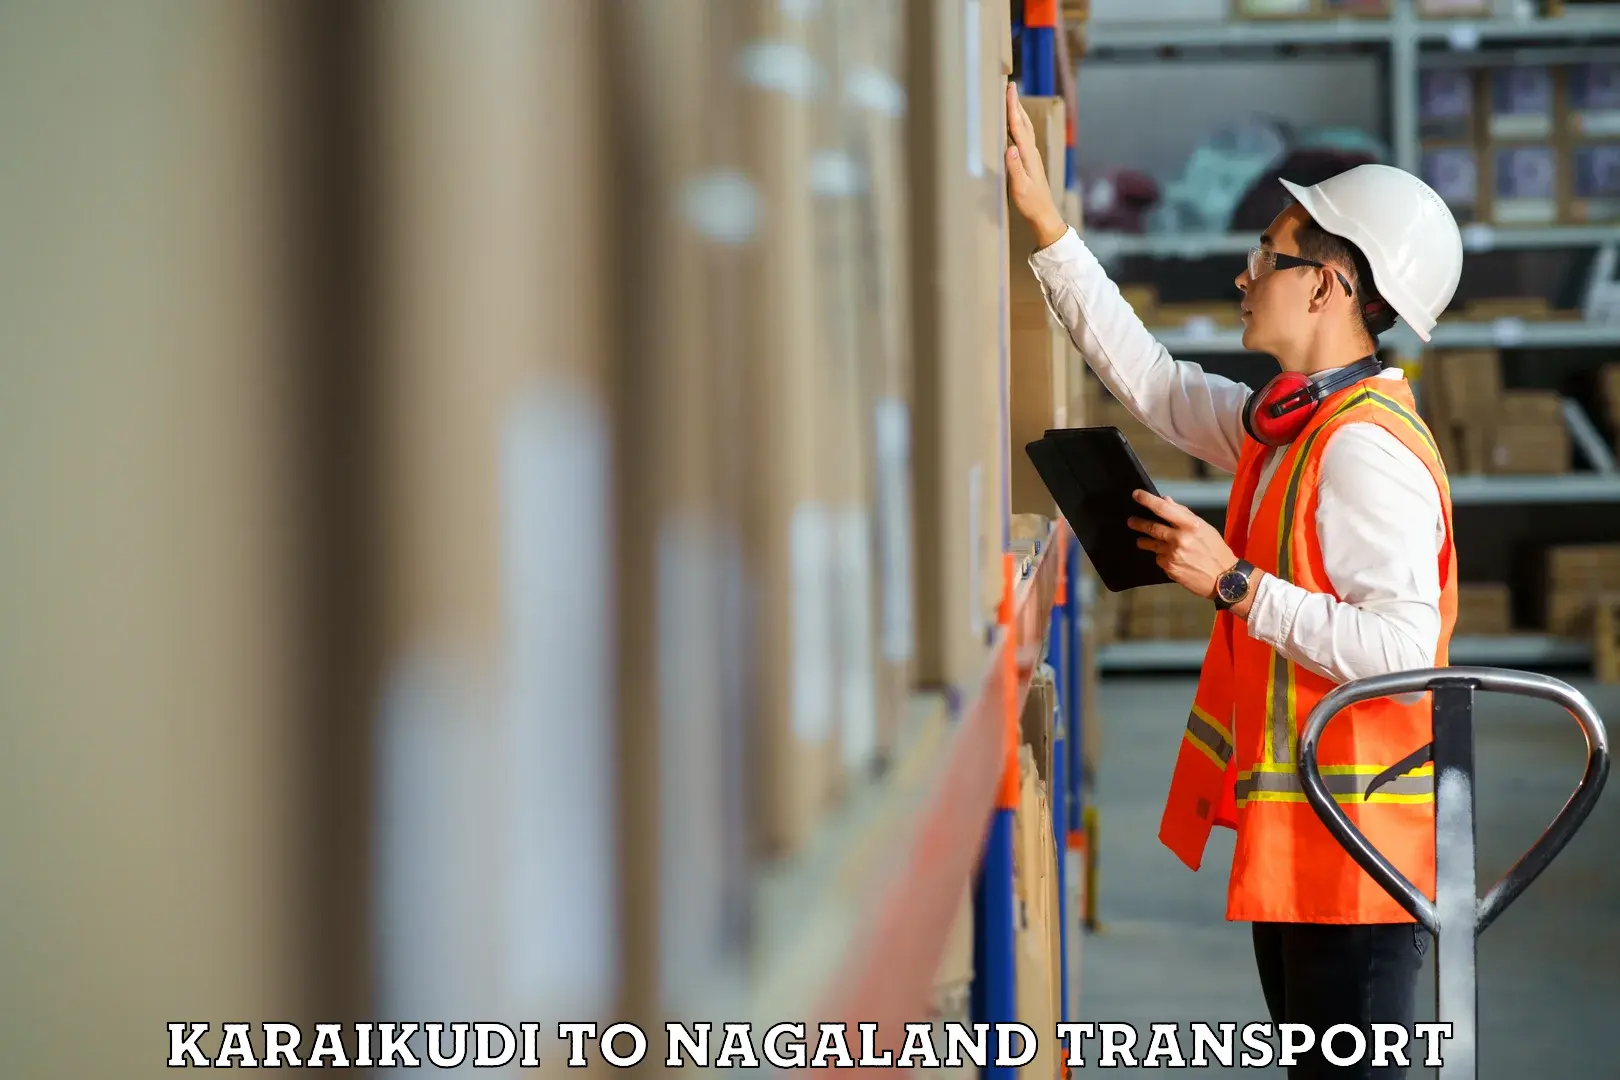 Furniture transport service Karaikudi to Nagaland